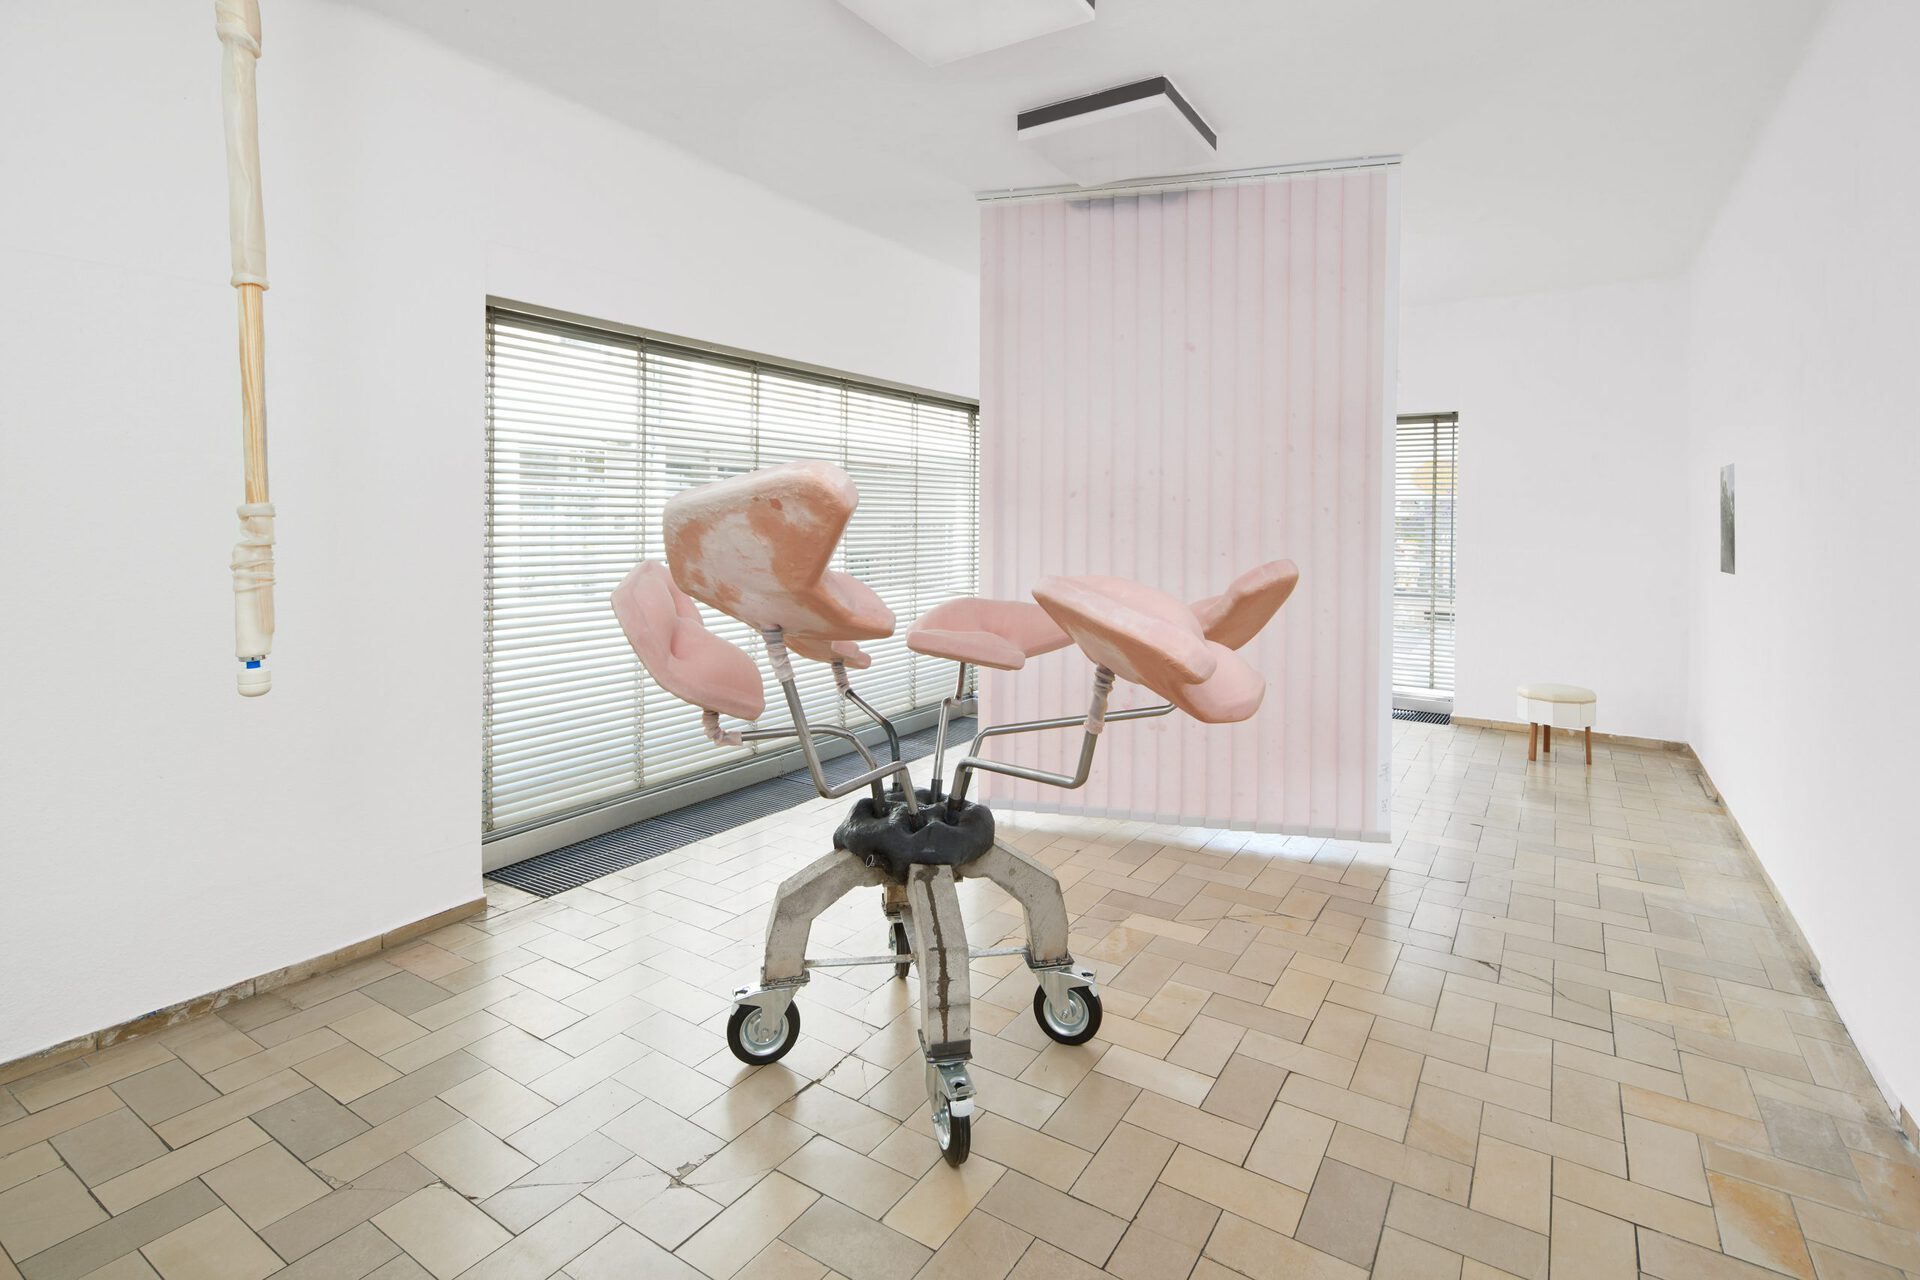 Jens Kothe, Room KVH, 2022